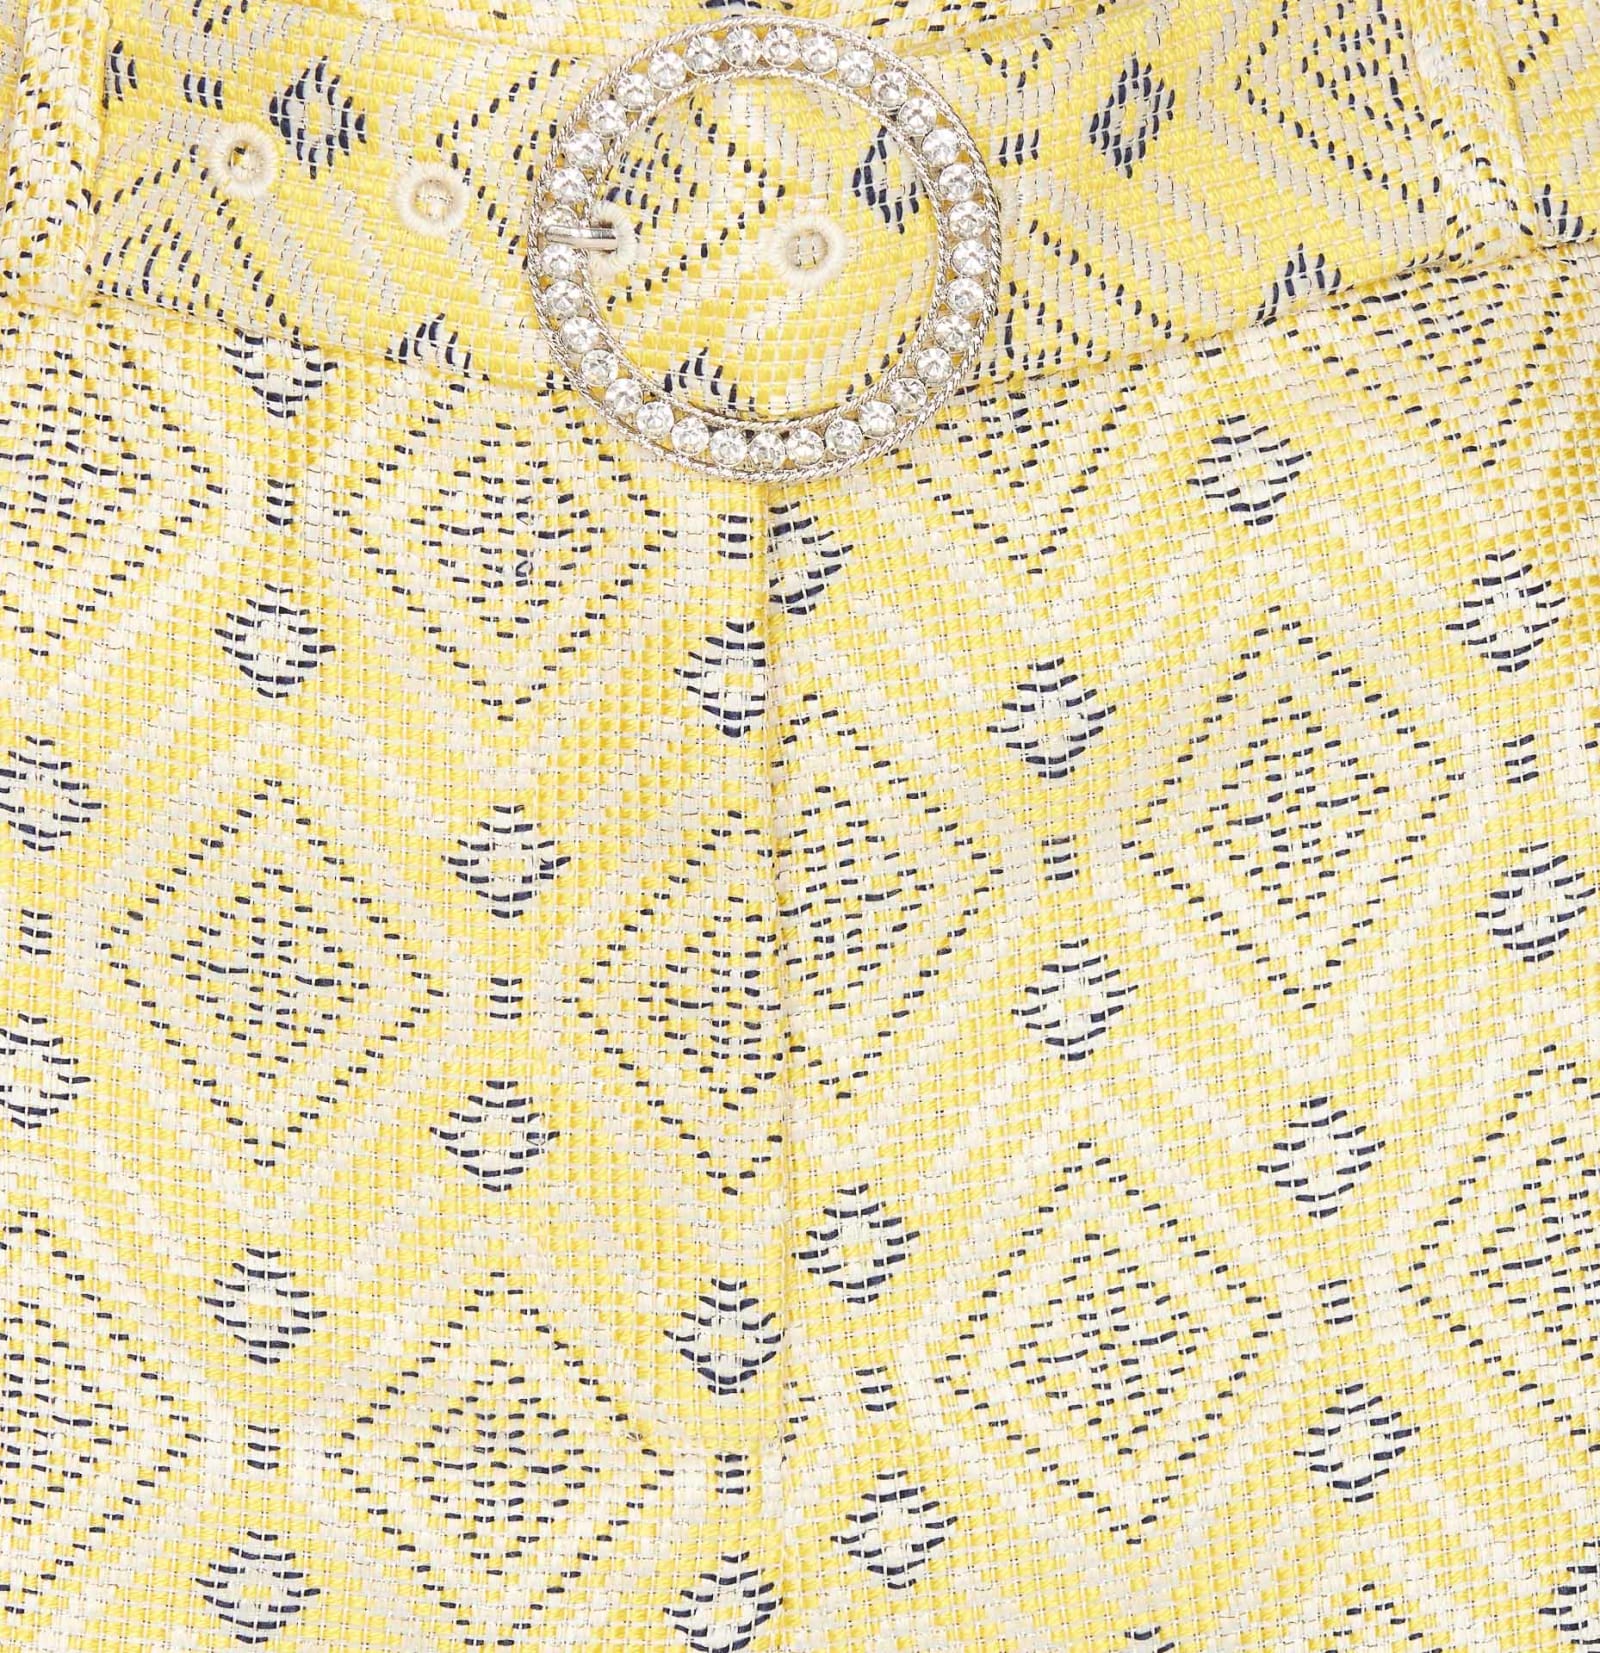 Shop Liu •jo Jacquard Shorts In Yellow